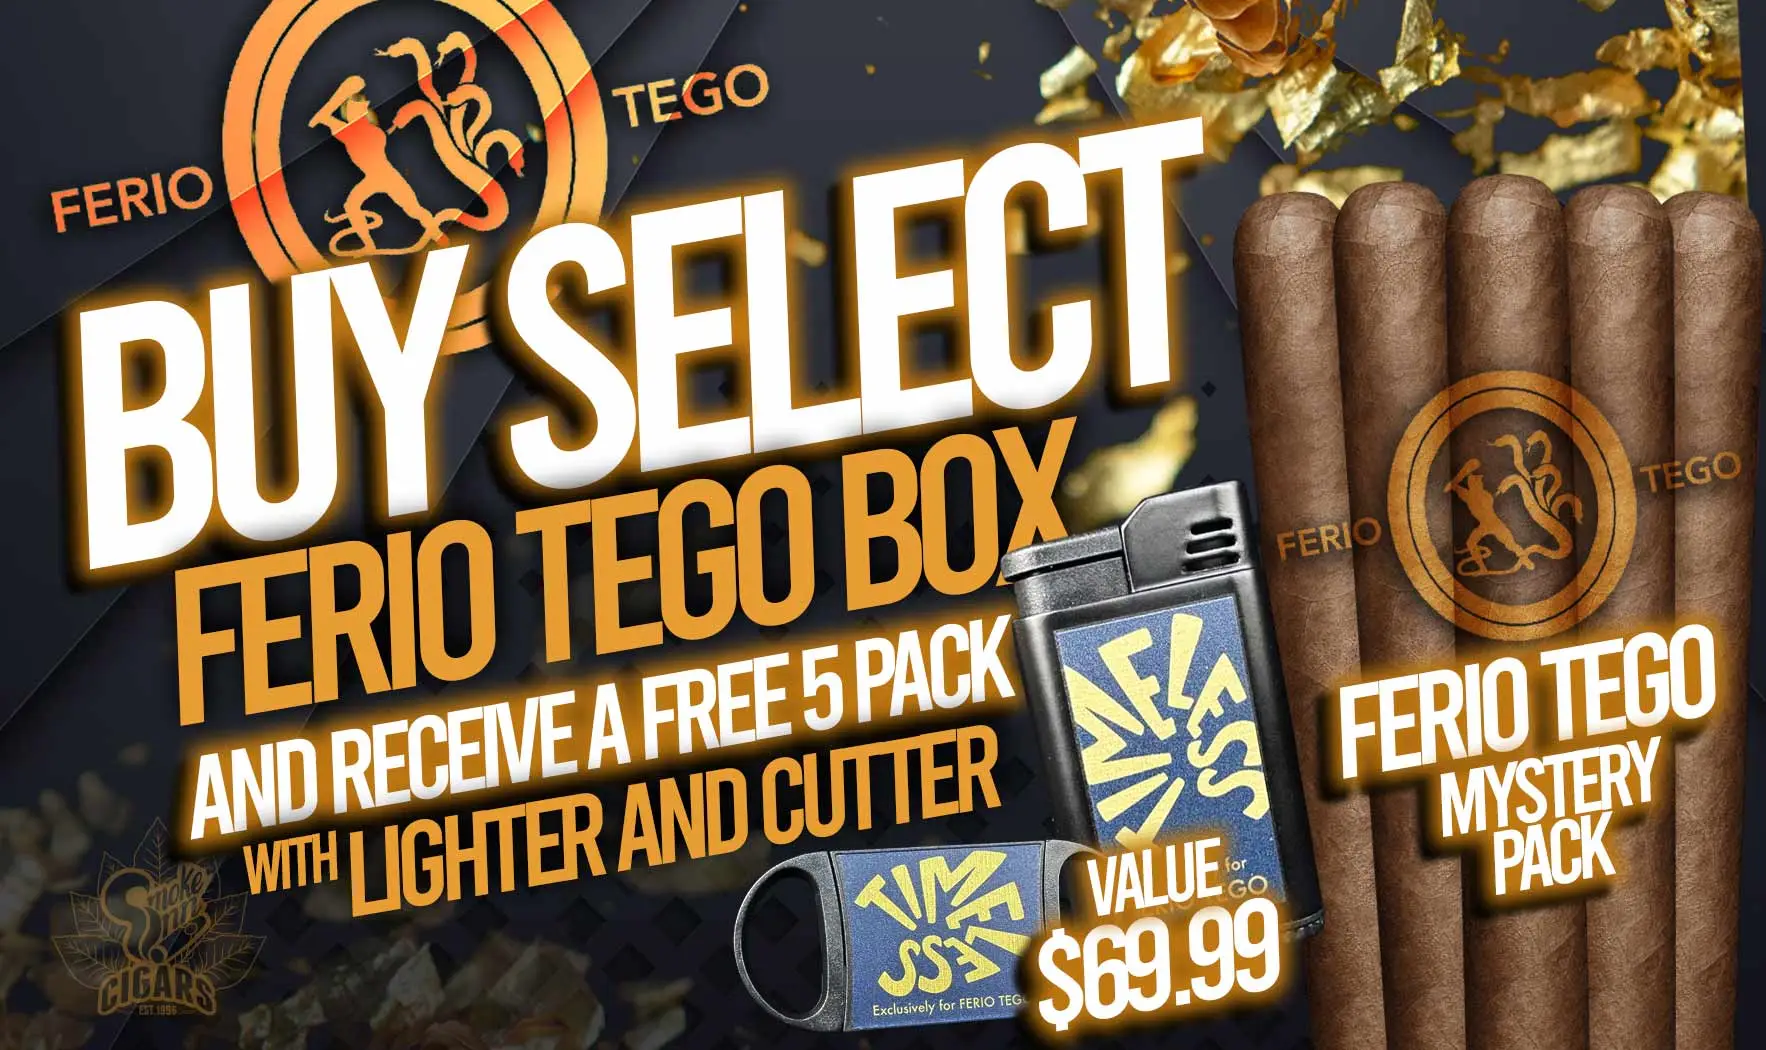 Ferio Tego Cutter Lighter Sampler Promo